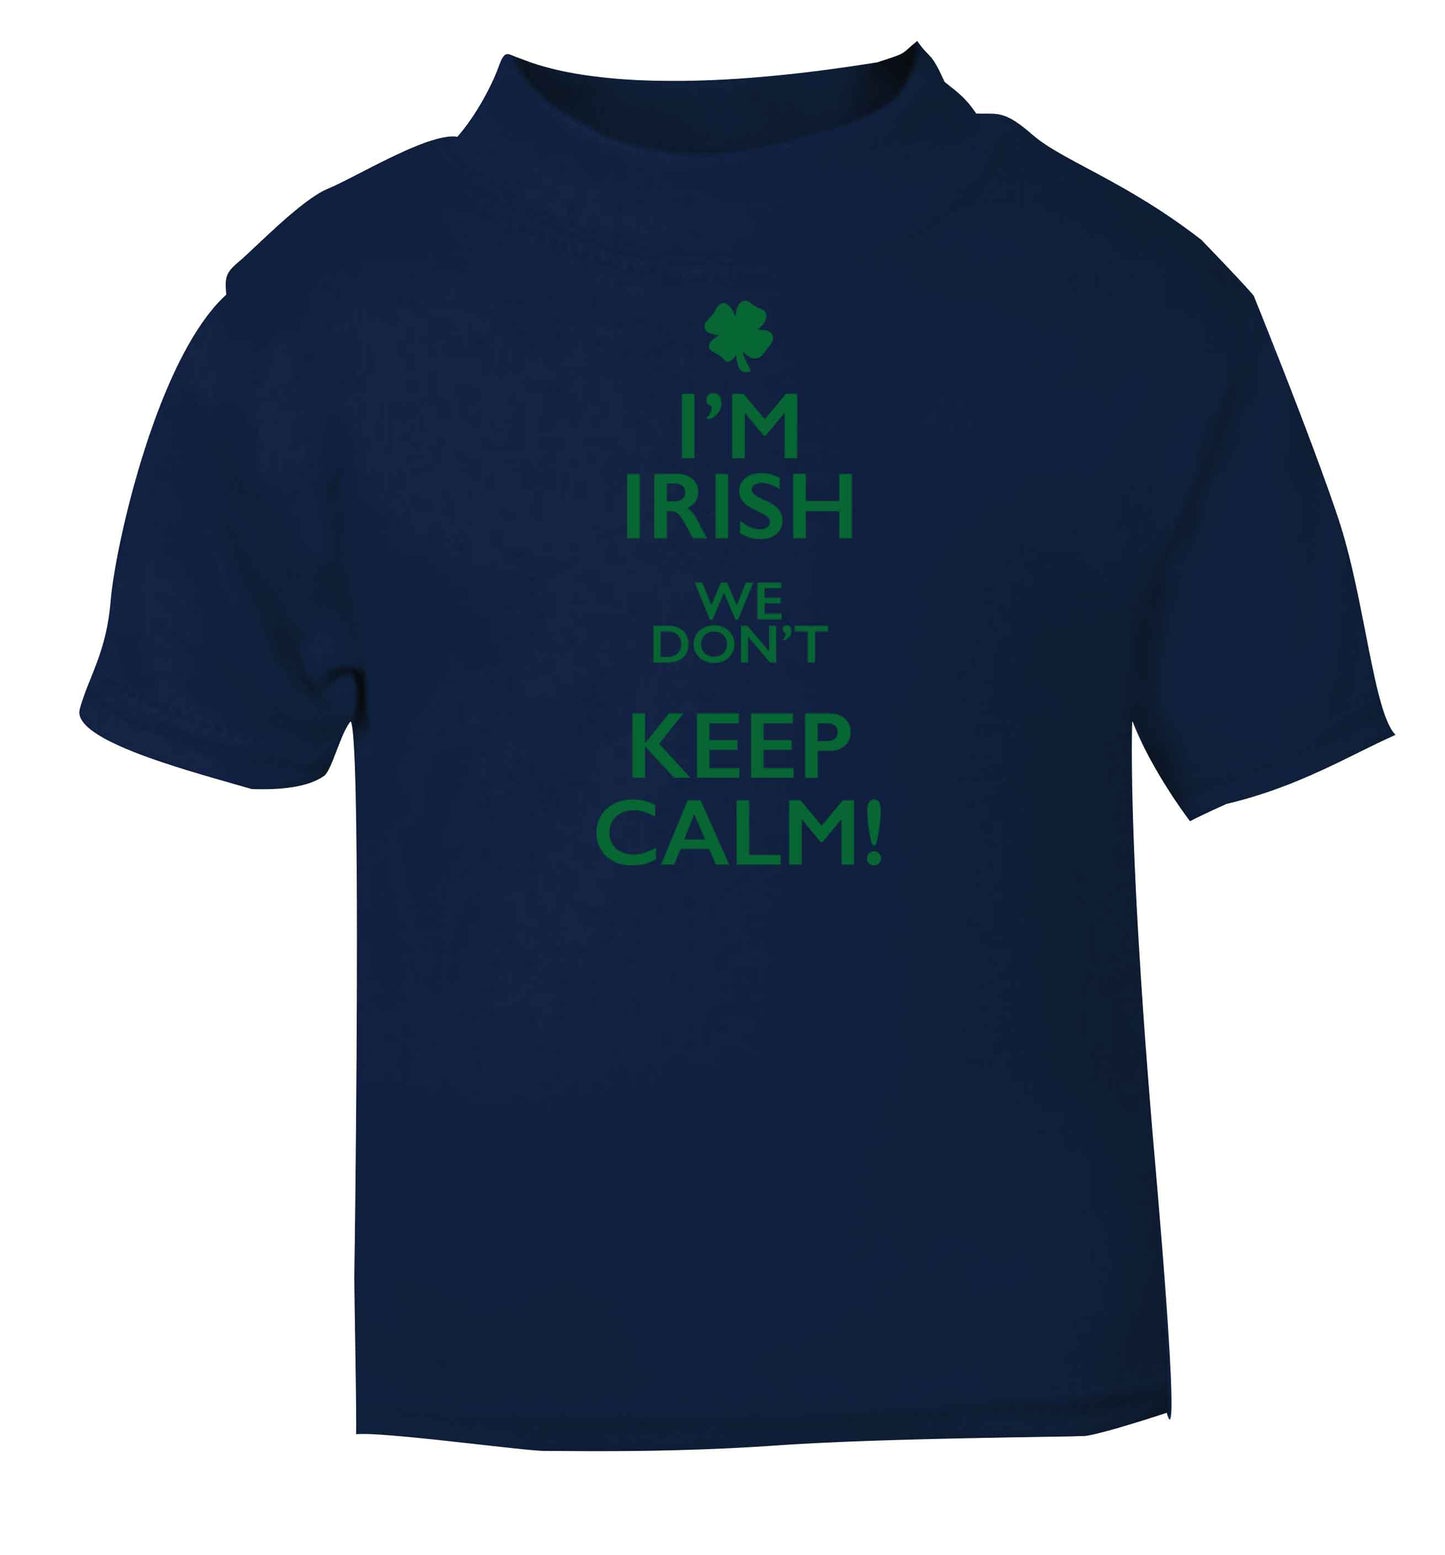 I'm Irish we don't keep calm navy baby toddler Tshirt 2 Years